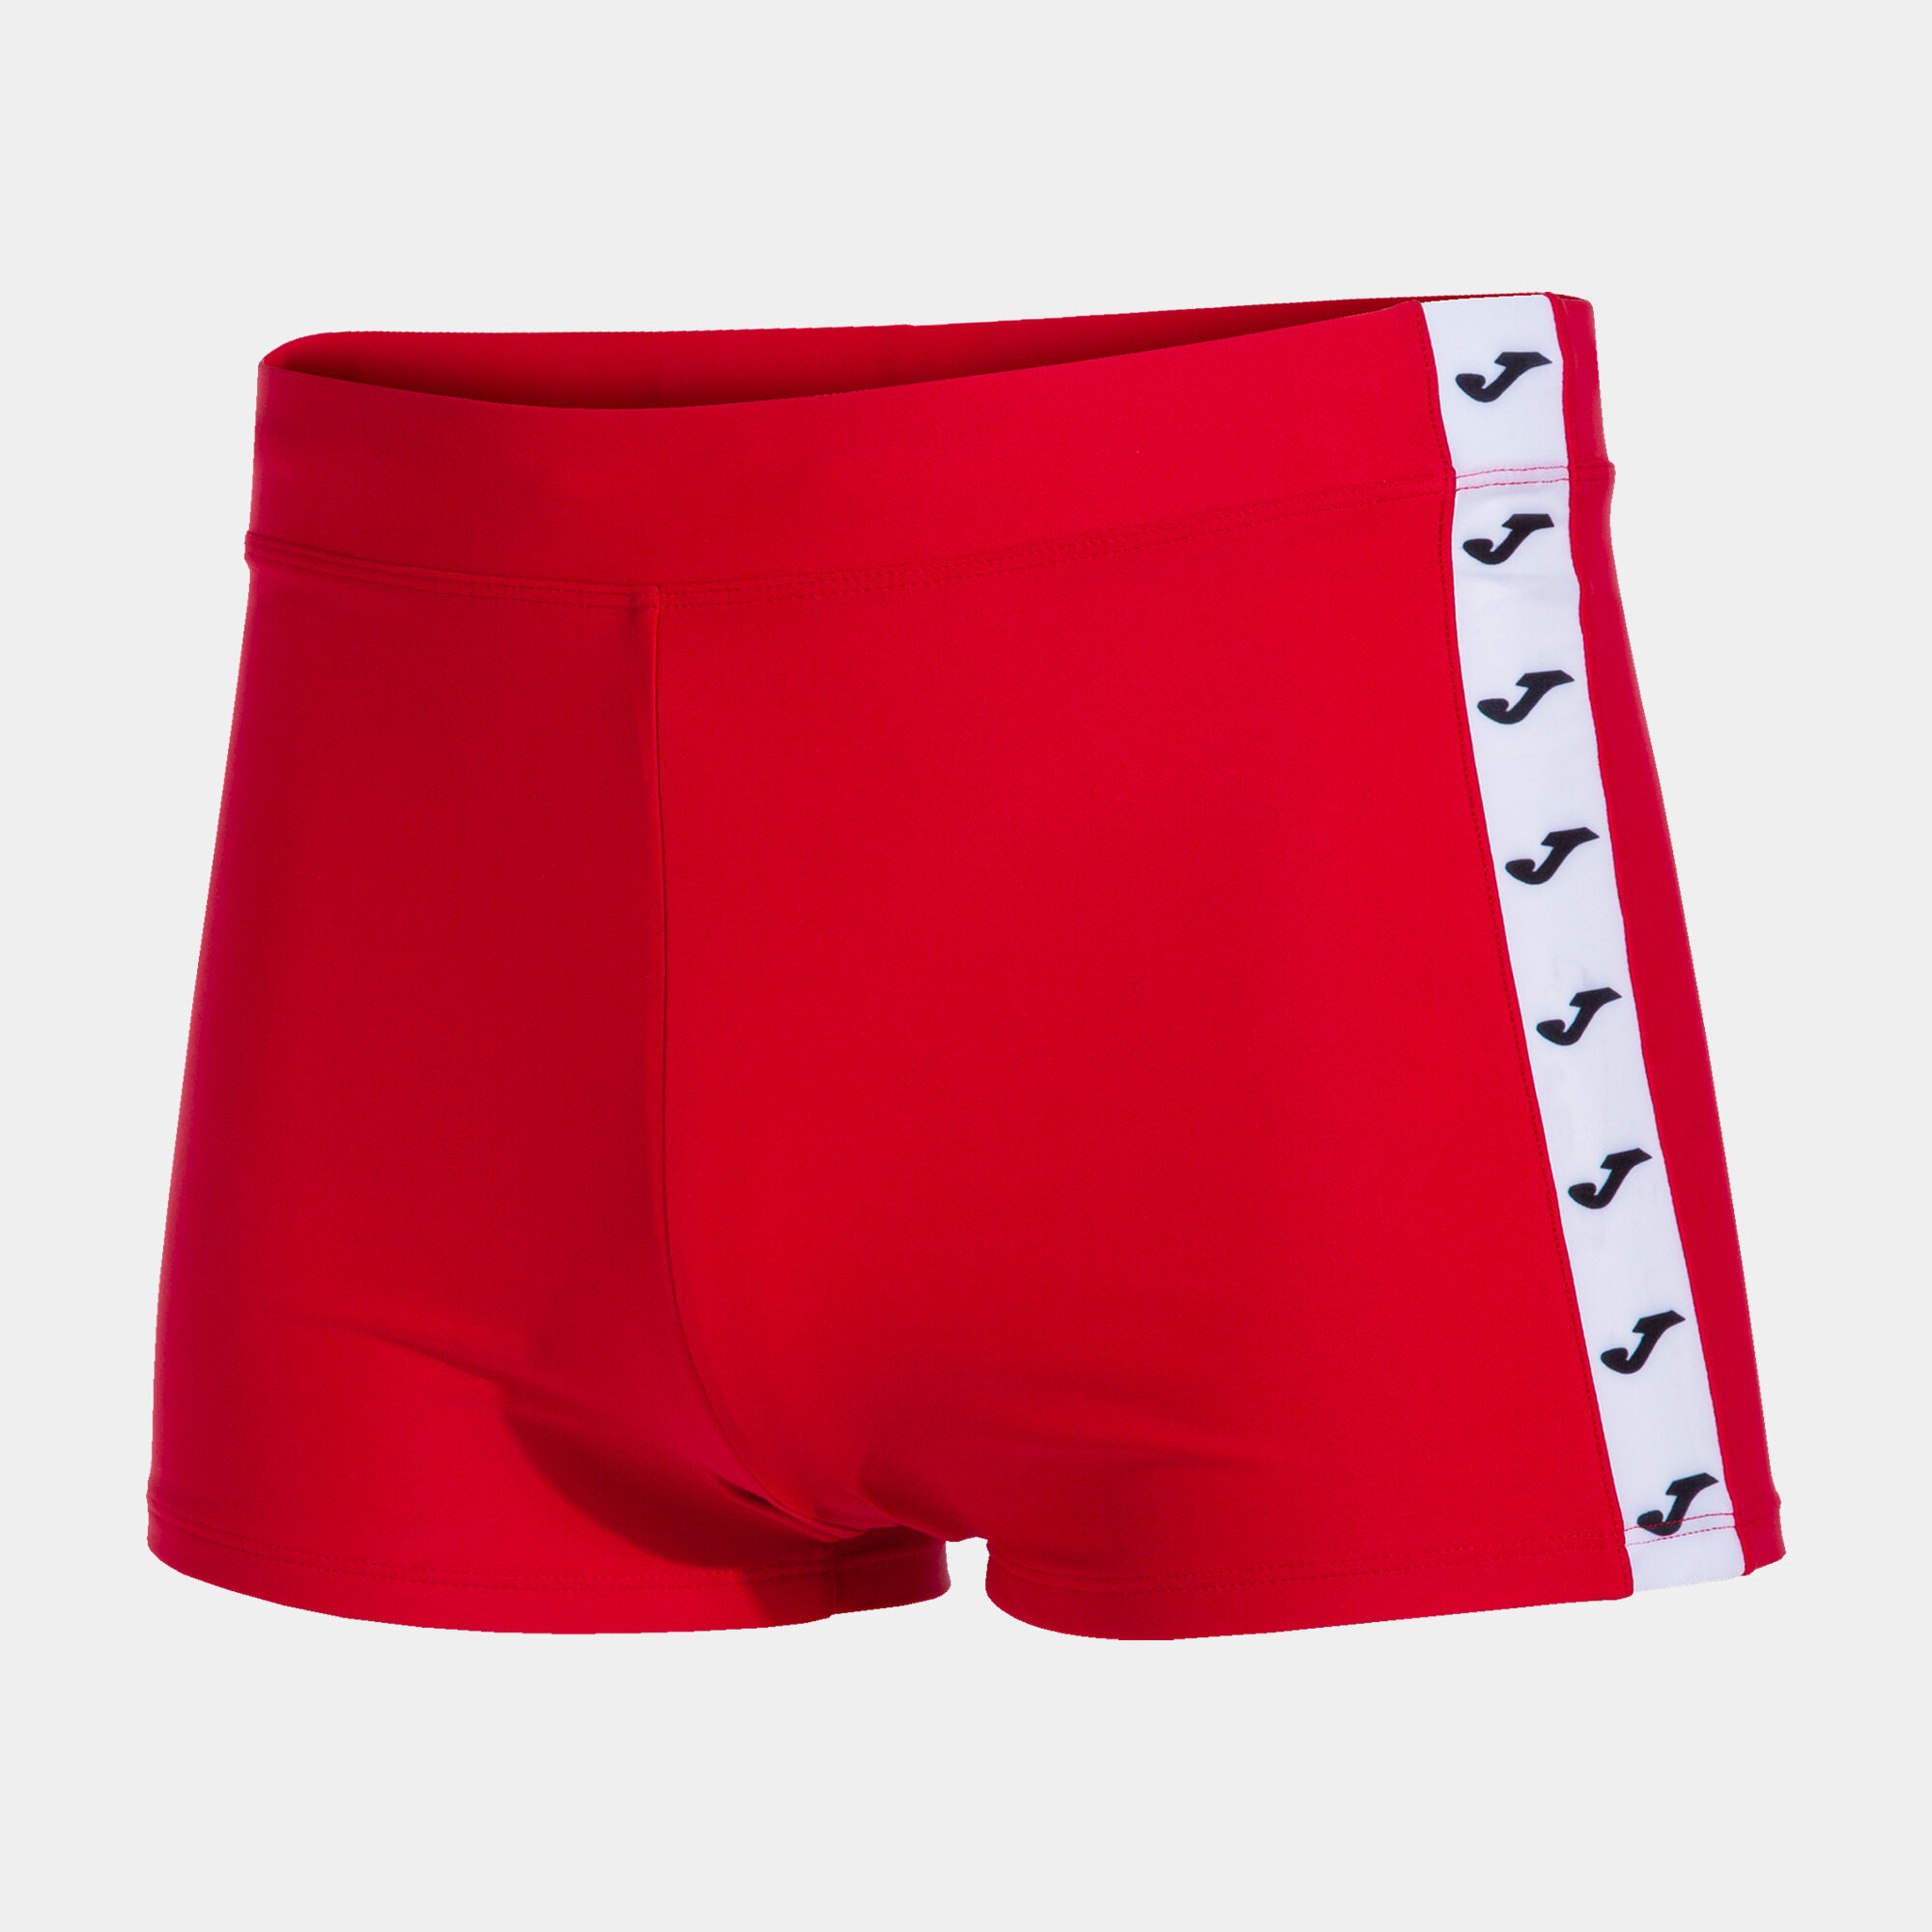 Boxeri pentru plajă bărbaȚi Splash roșu